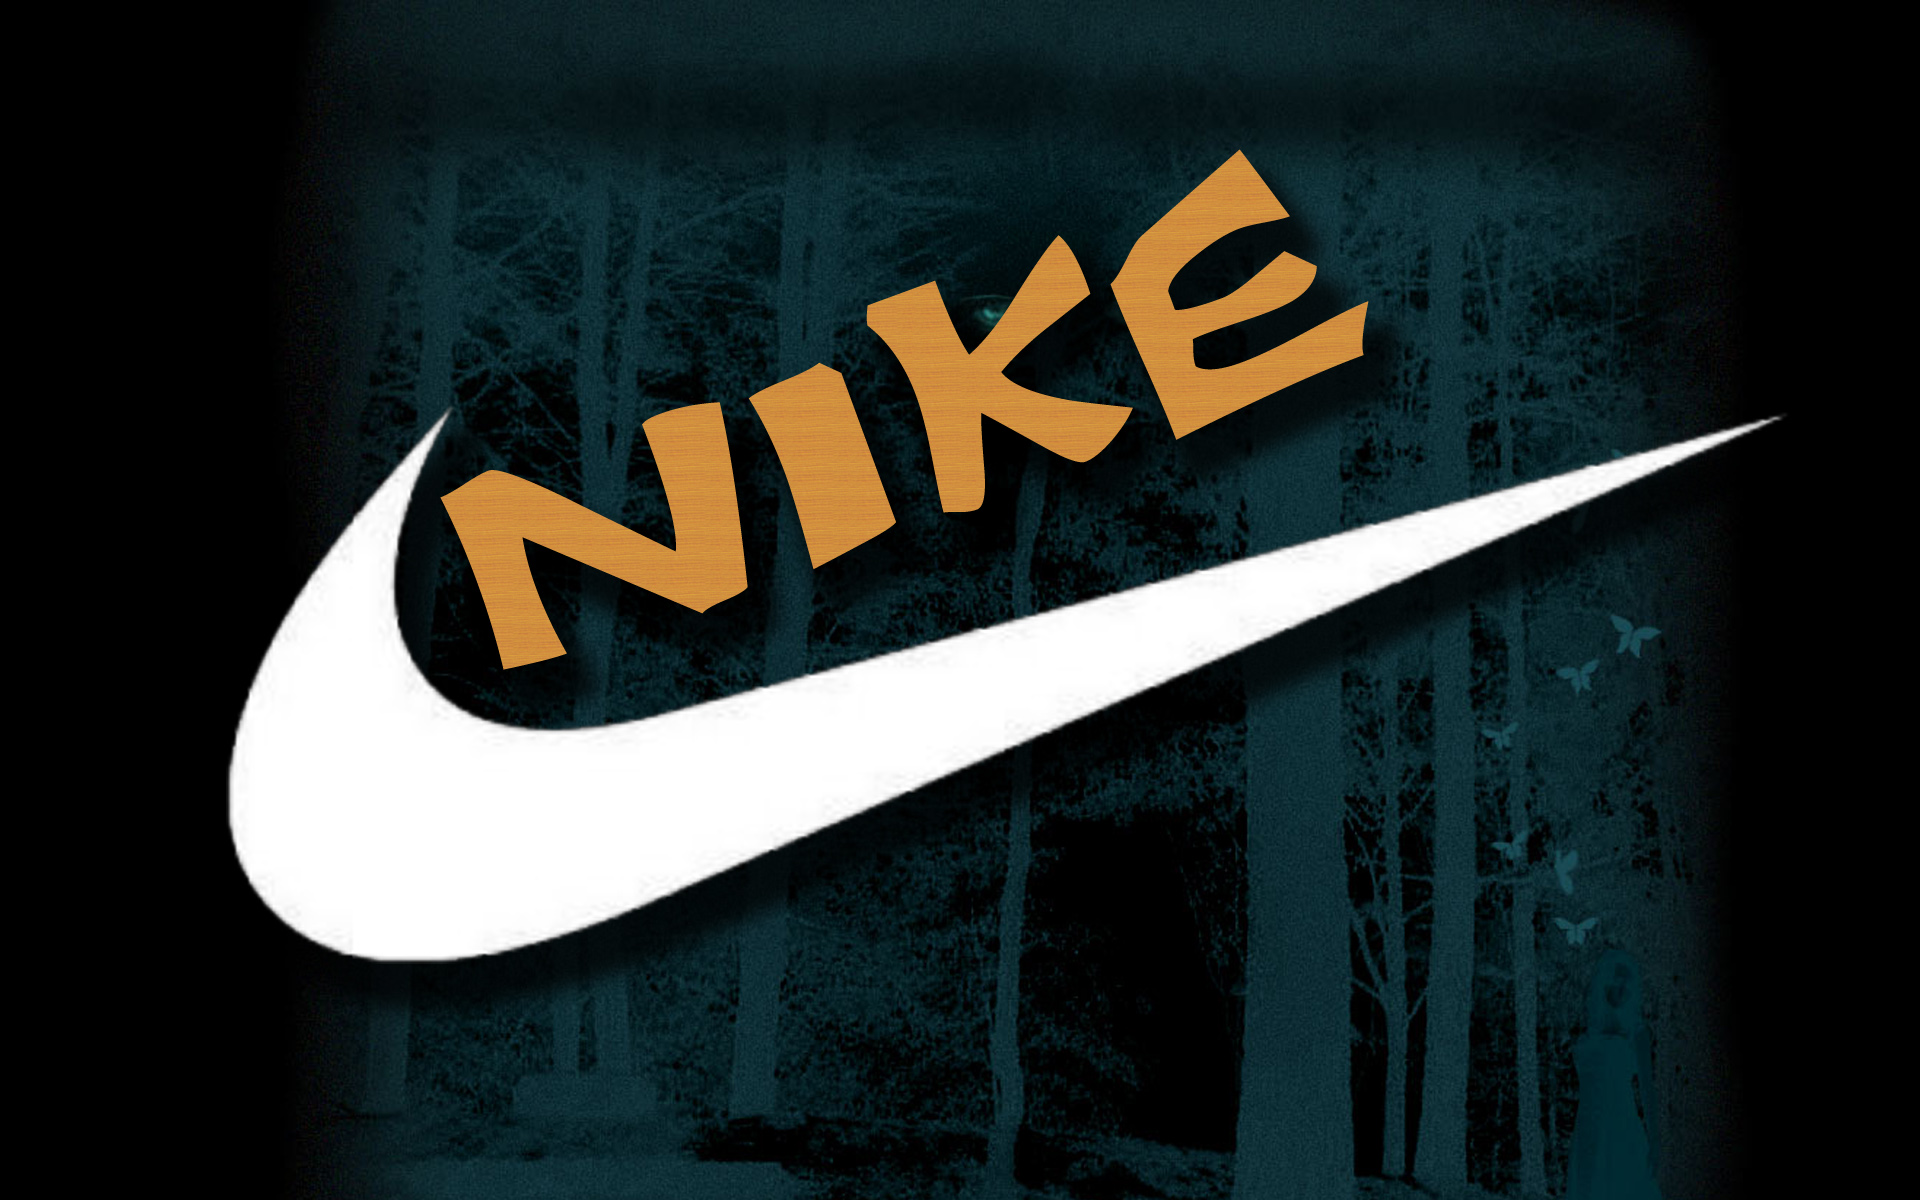 Nike Logo Wallpapers HD 2015 free download | PixelsTalk.Net
